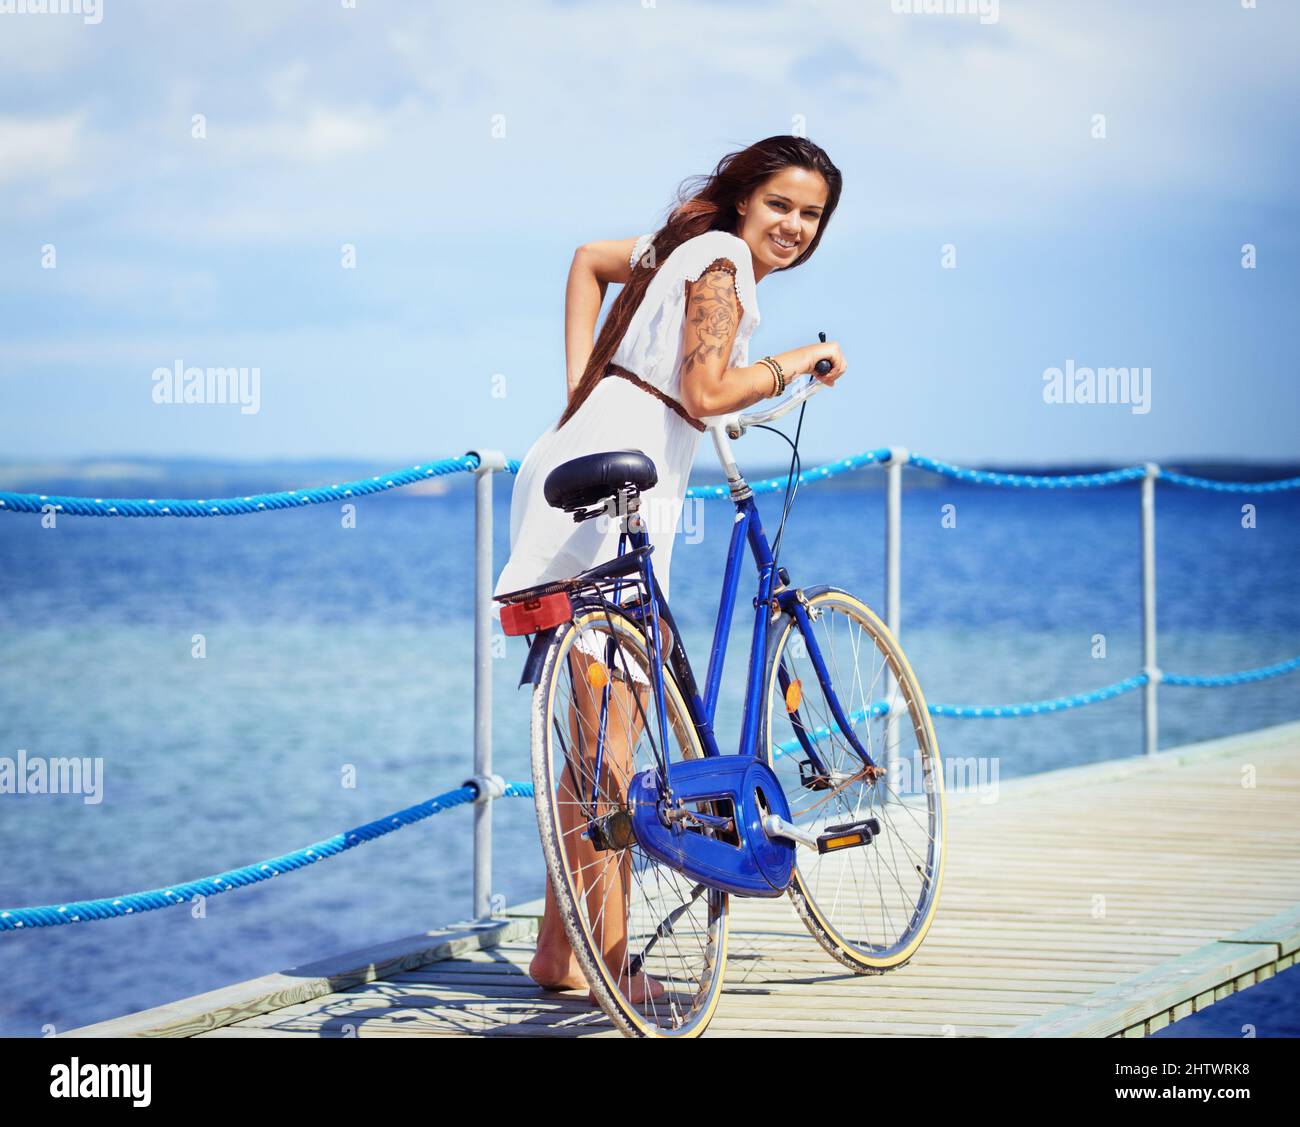 Vélo amusant au bord de la mer. Prise de vue en longueur d'une magnifique jeune femme tatouée poussant son vélo le long d'une jetée. Banque D'Images